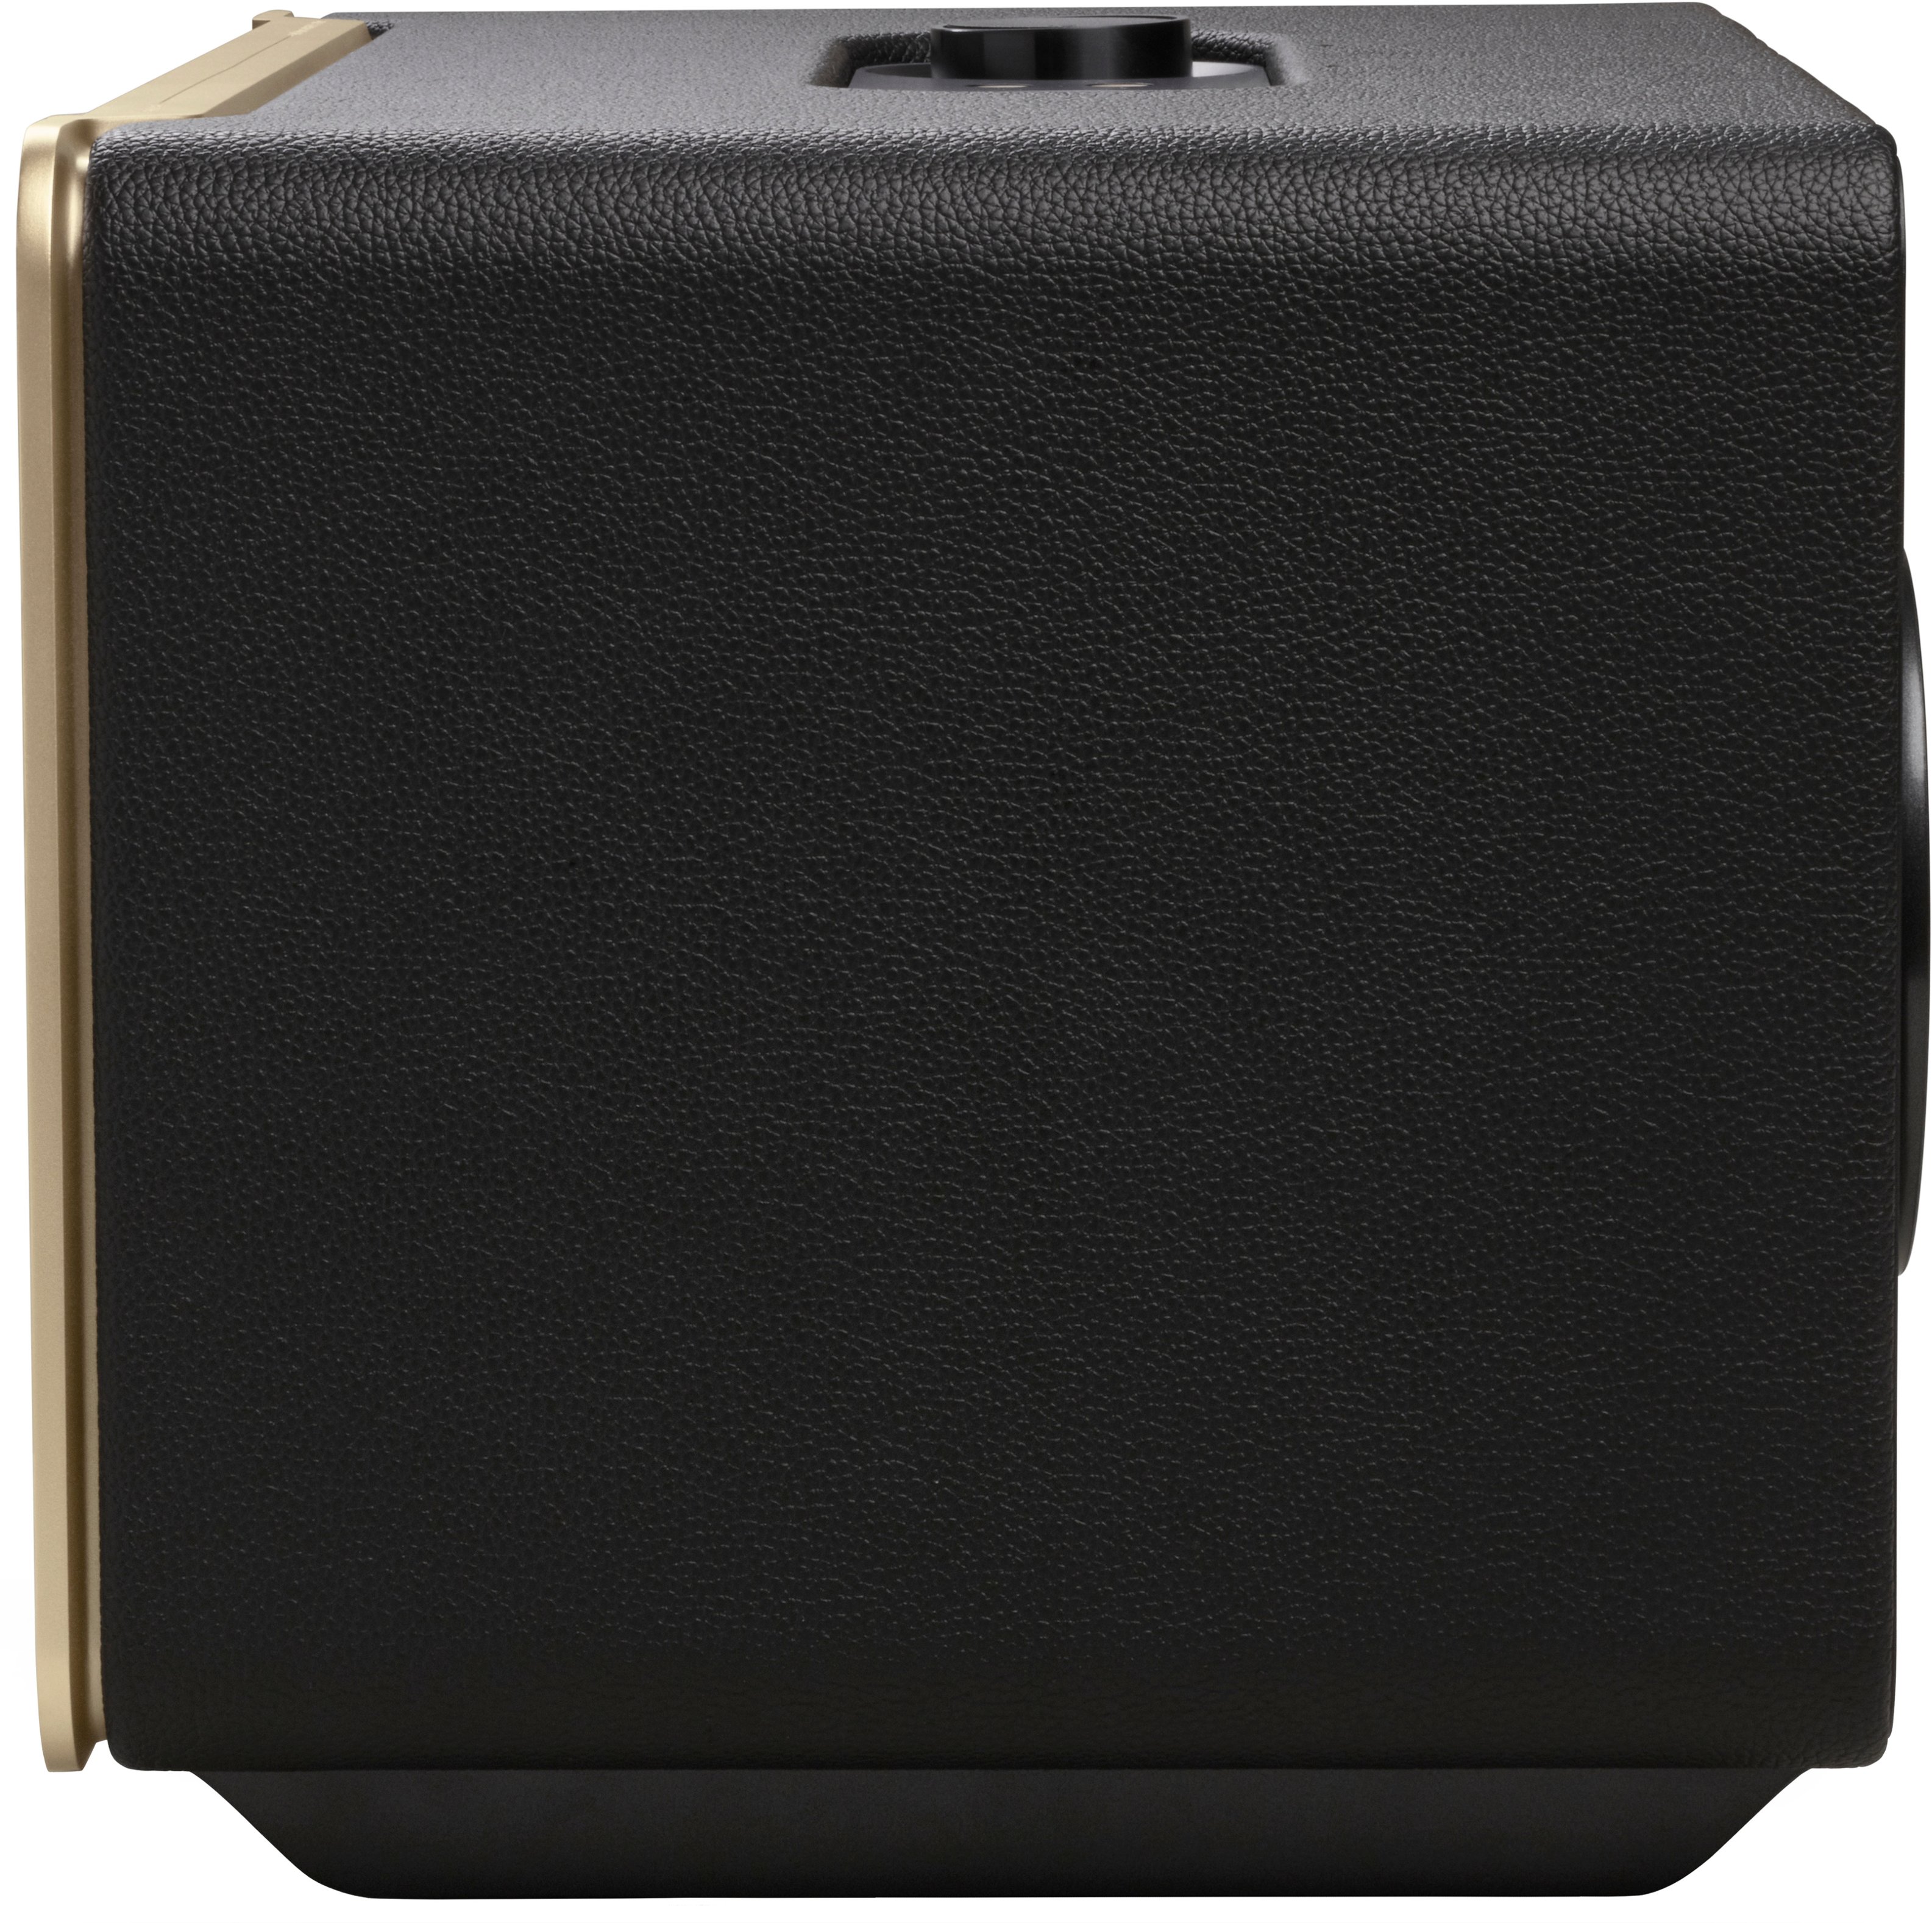 Buy - Authentics JBL Best Black Smart Home 500 JBLAUTH500BLKAM Speaker